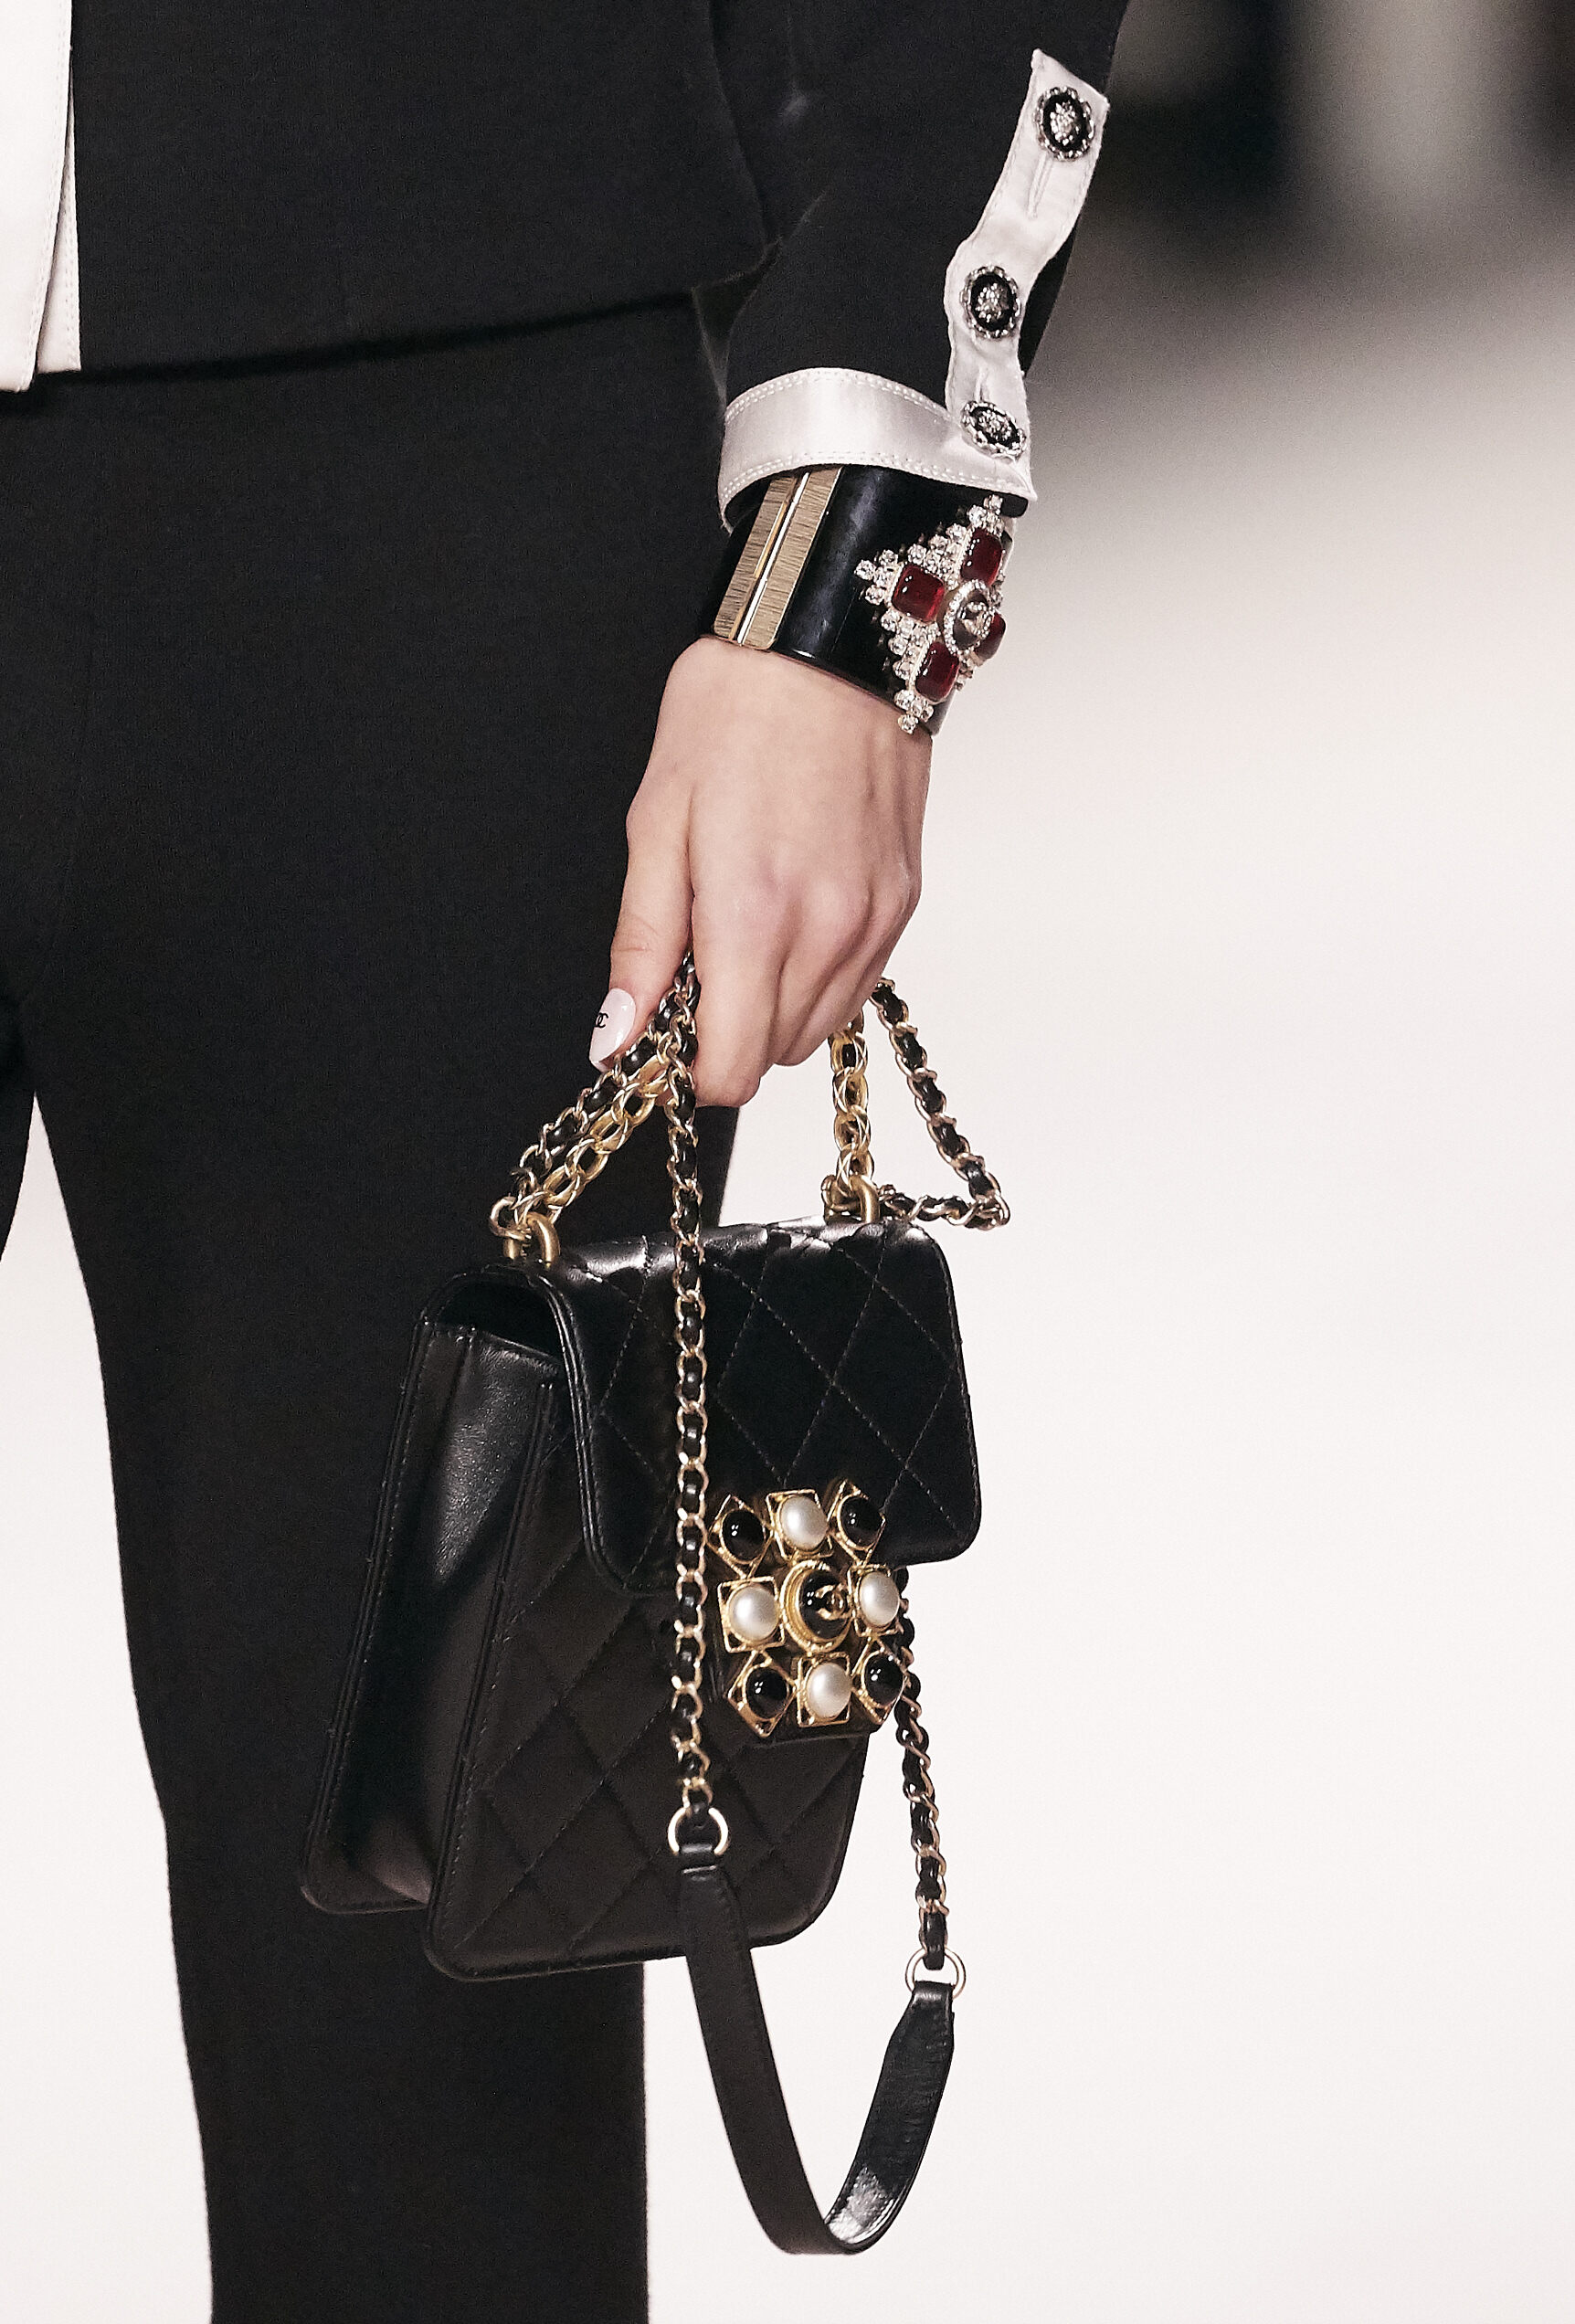 Chanel迷你皮革手袋禮盒一次過收藏4個經典小手袋！2020工坊系列新手袋推